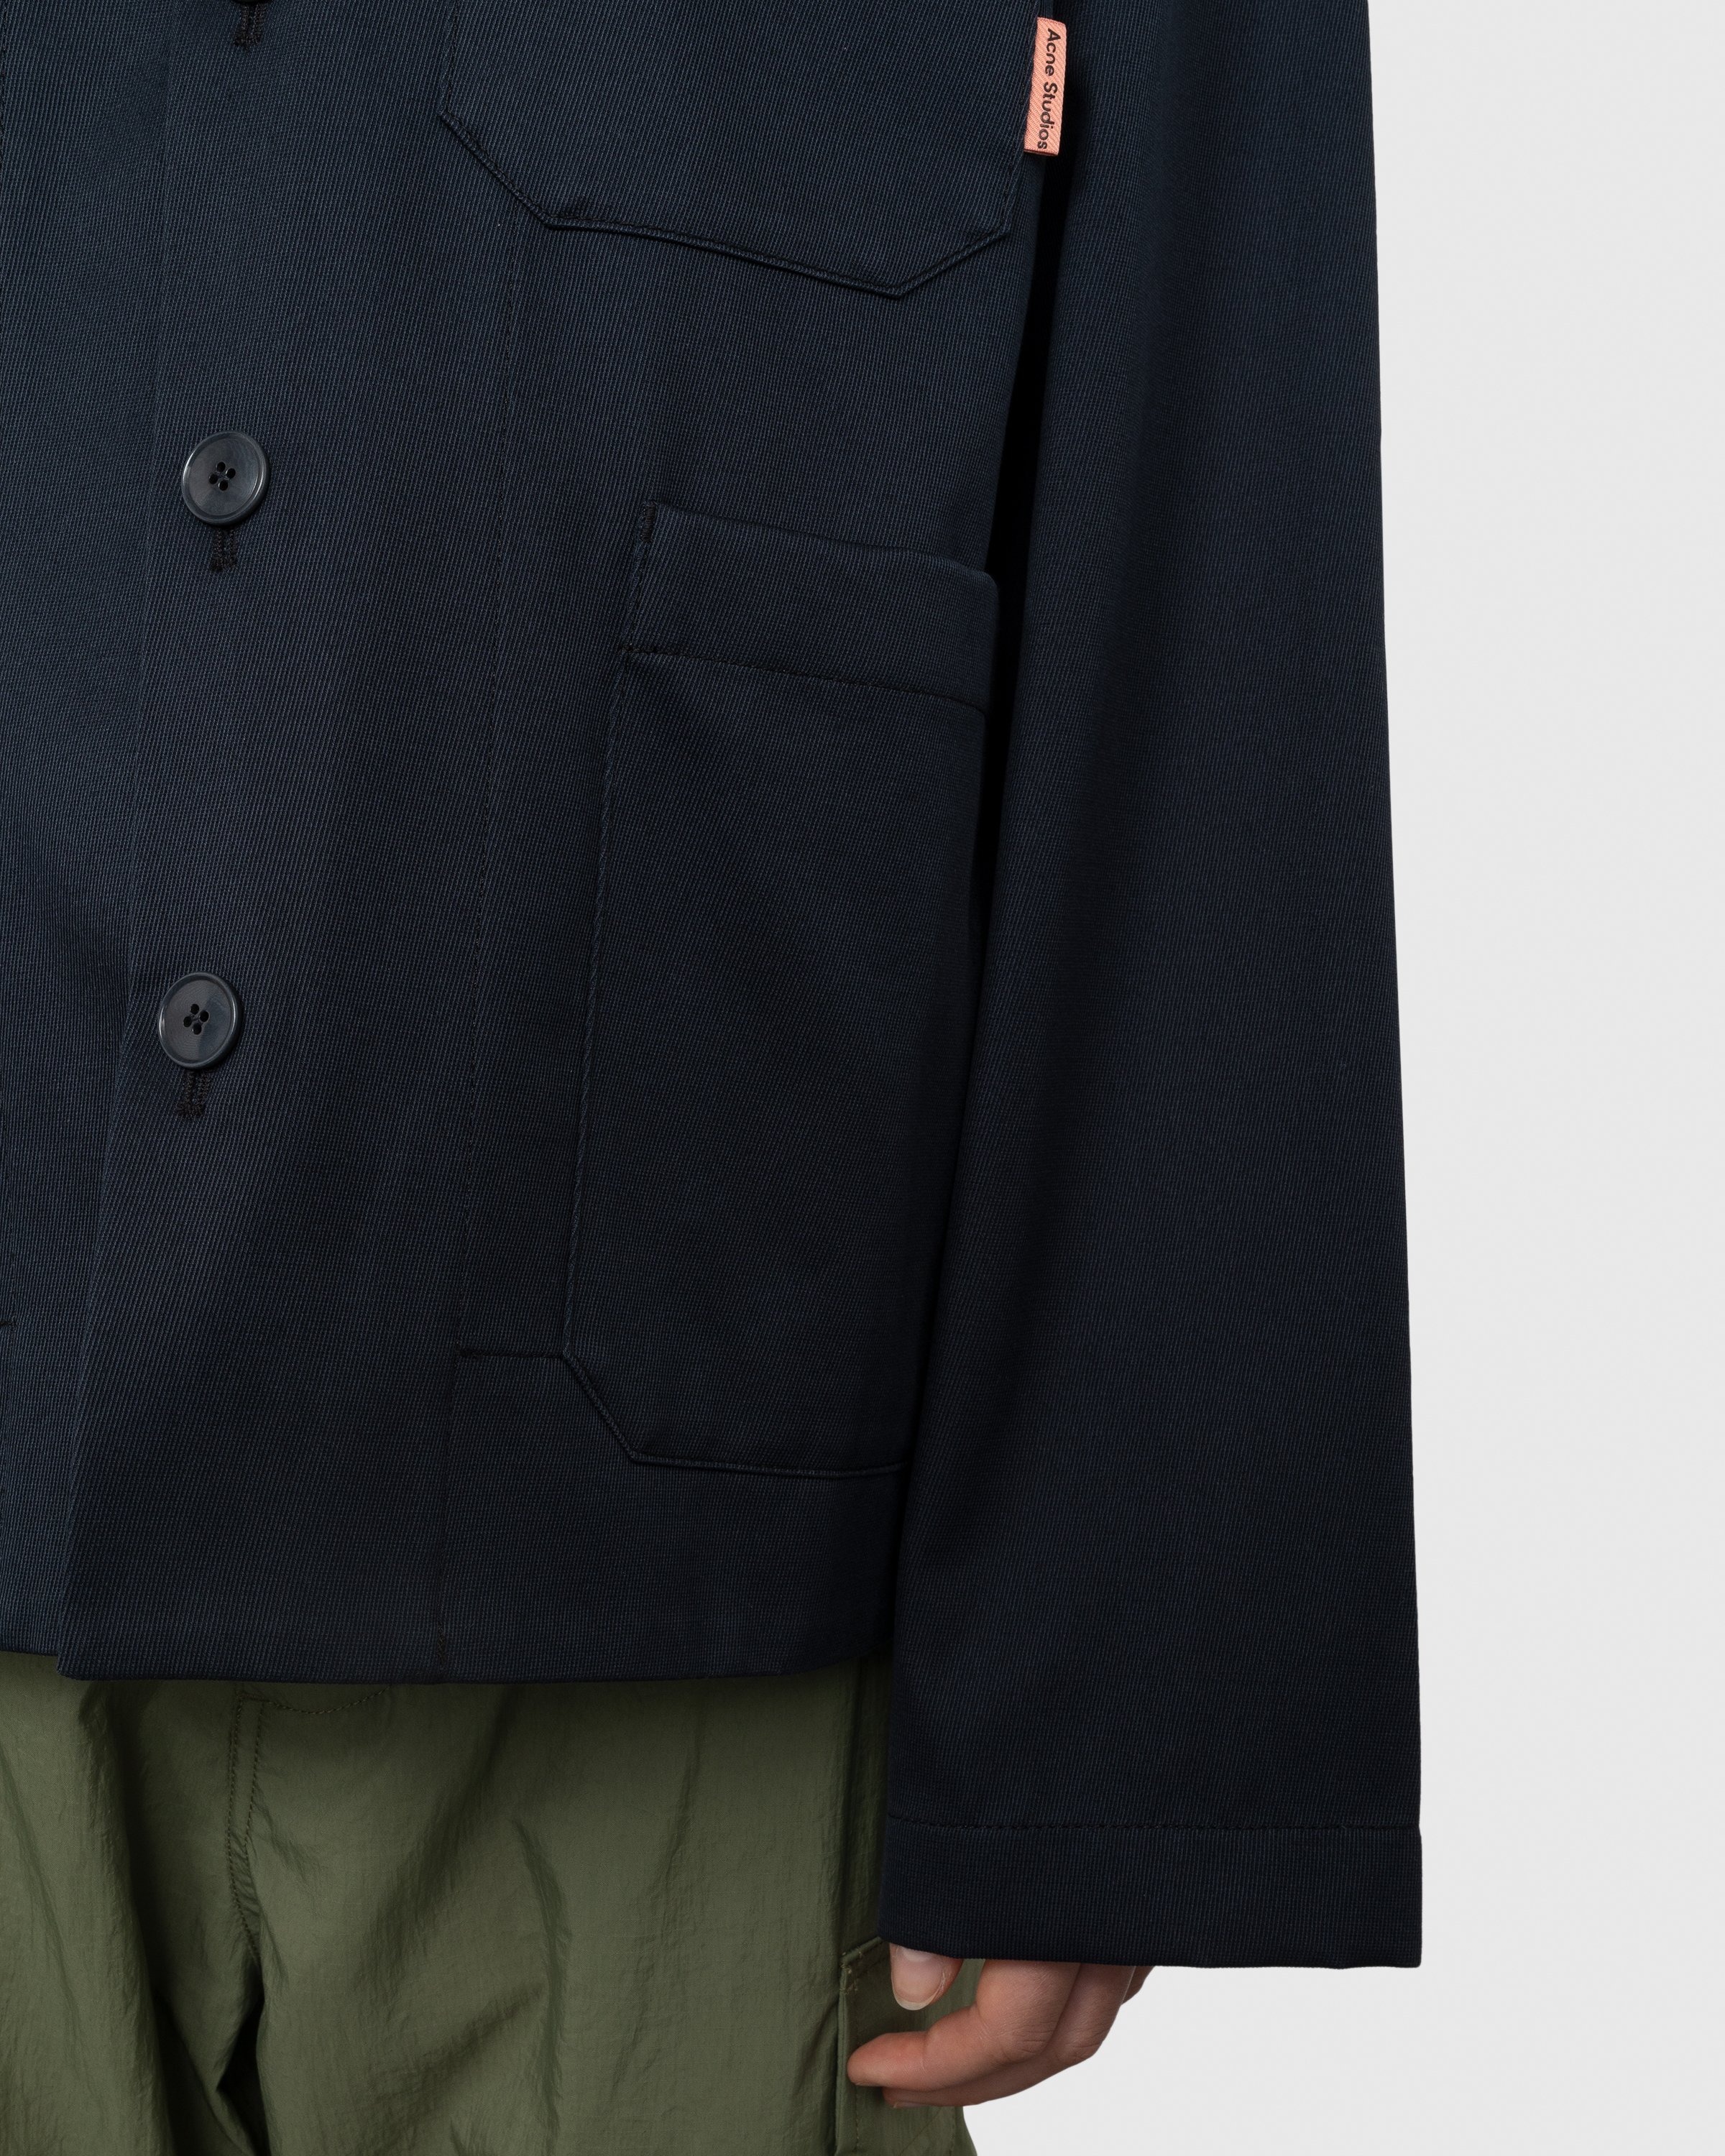 Acne Studios - Casual Jacket Navy Blue - Clothing - Blue - Image 5